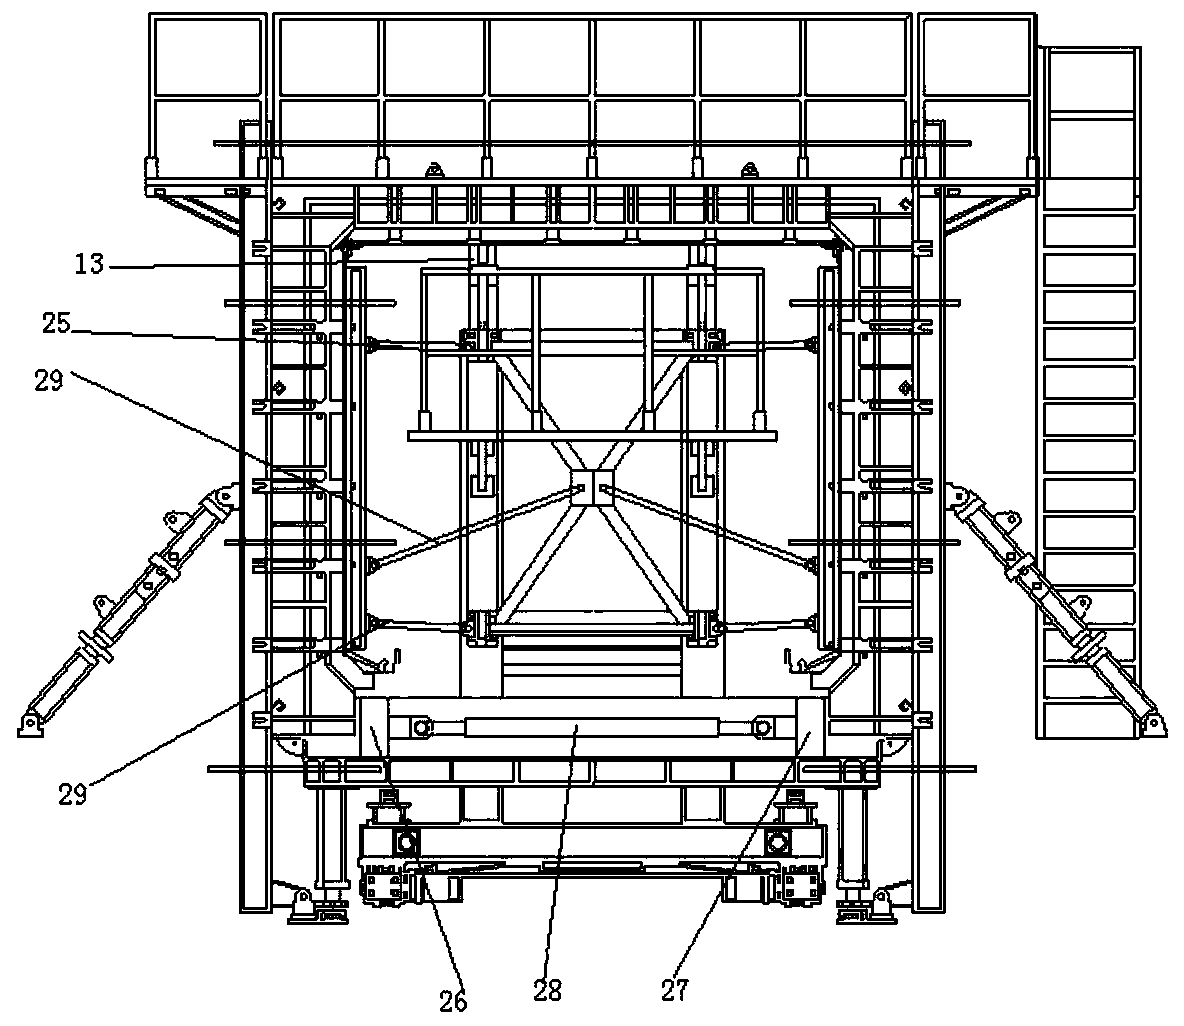 An Integral Hydraulic Formwork Used in Box Culvert Prefabrication